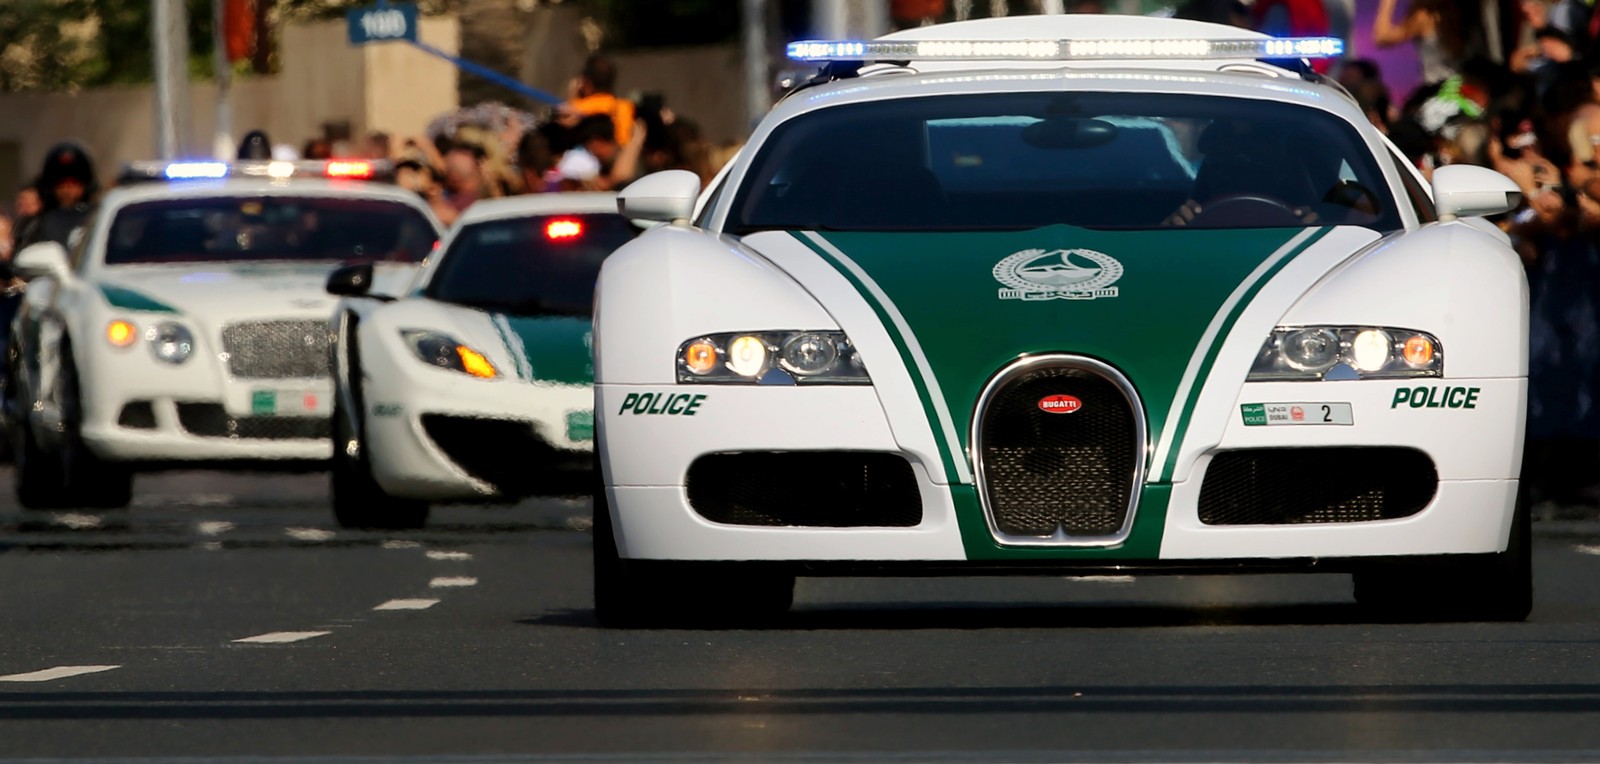 Dubai tem uma superfrota de carros de polícia (Foto: MARWAN NAAMANI / AFP)